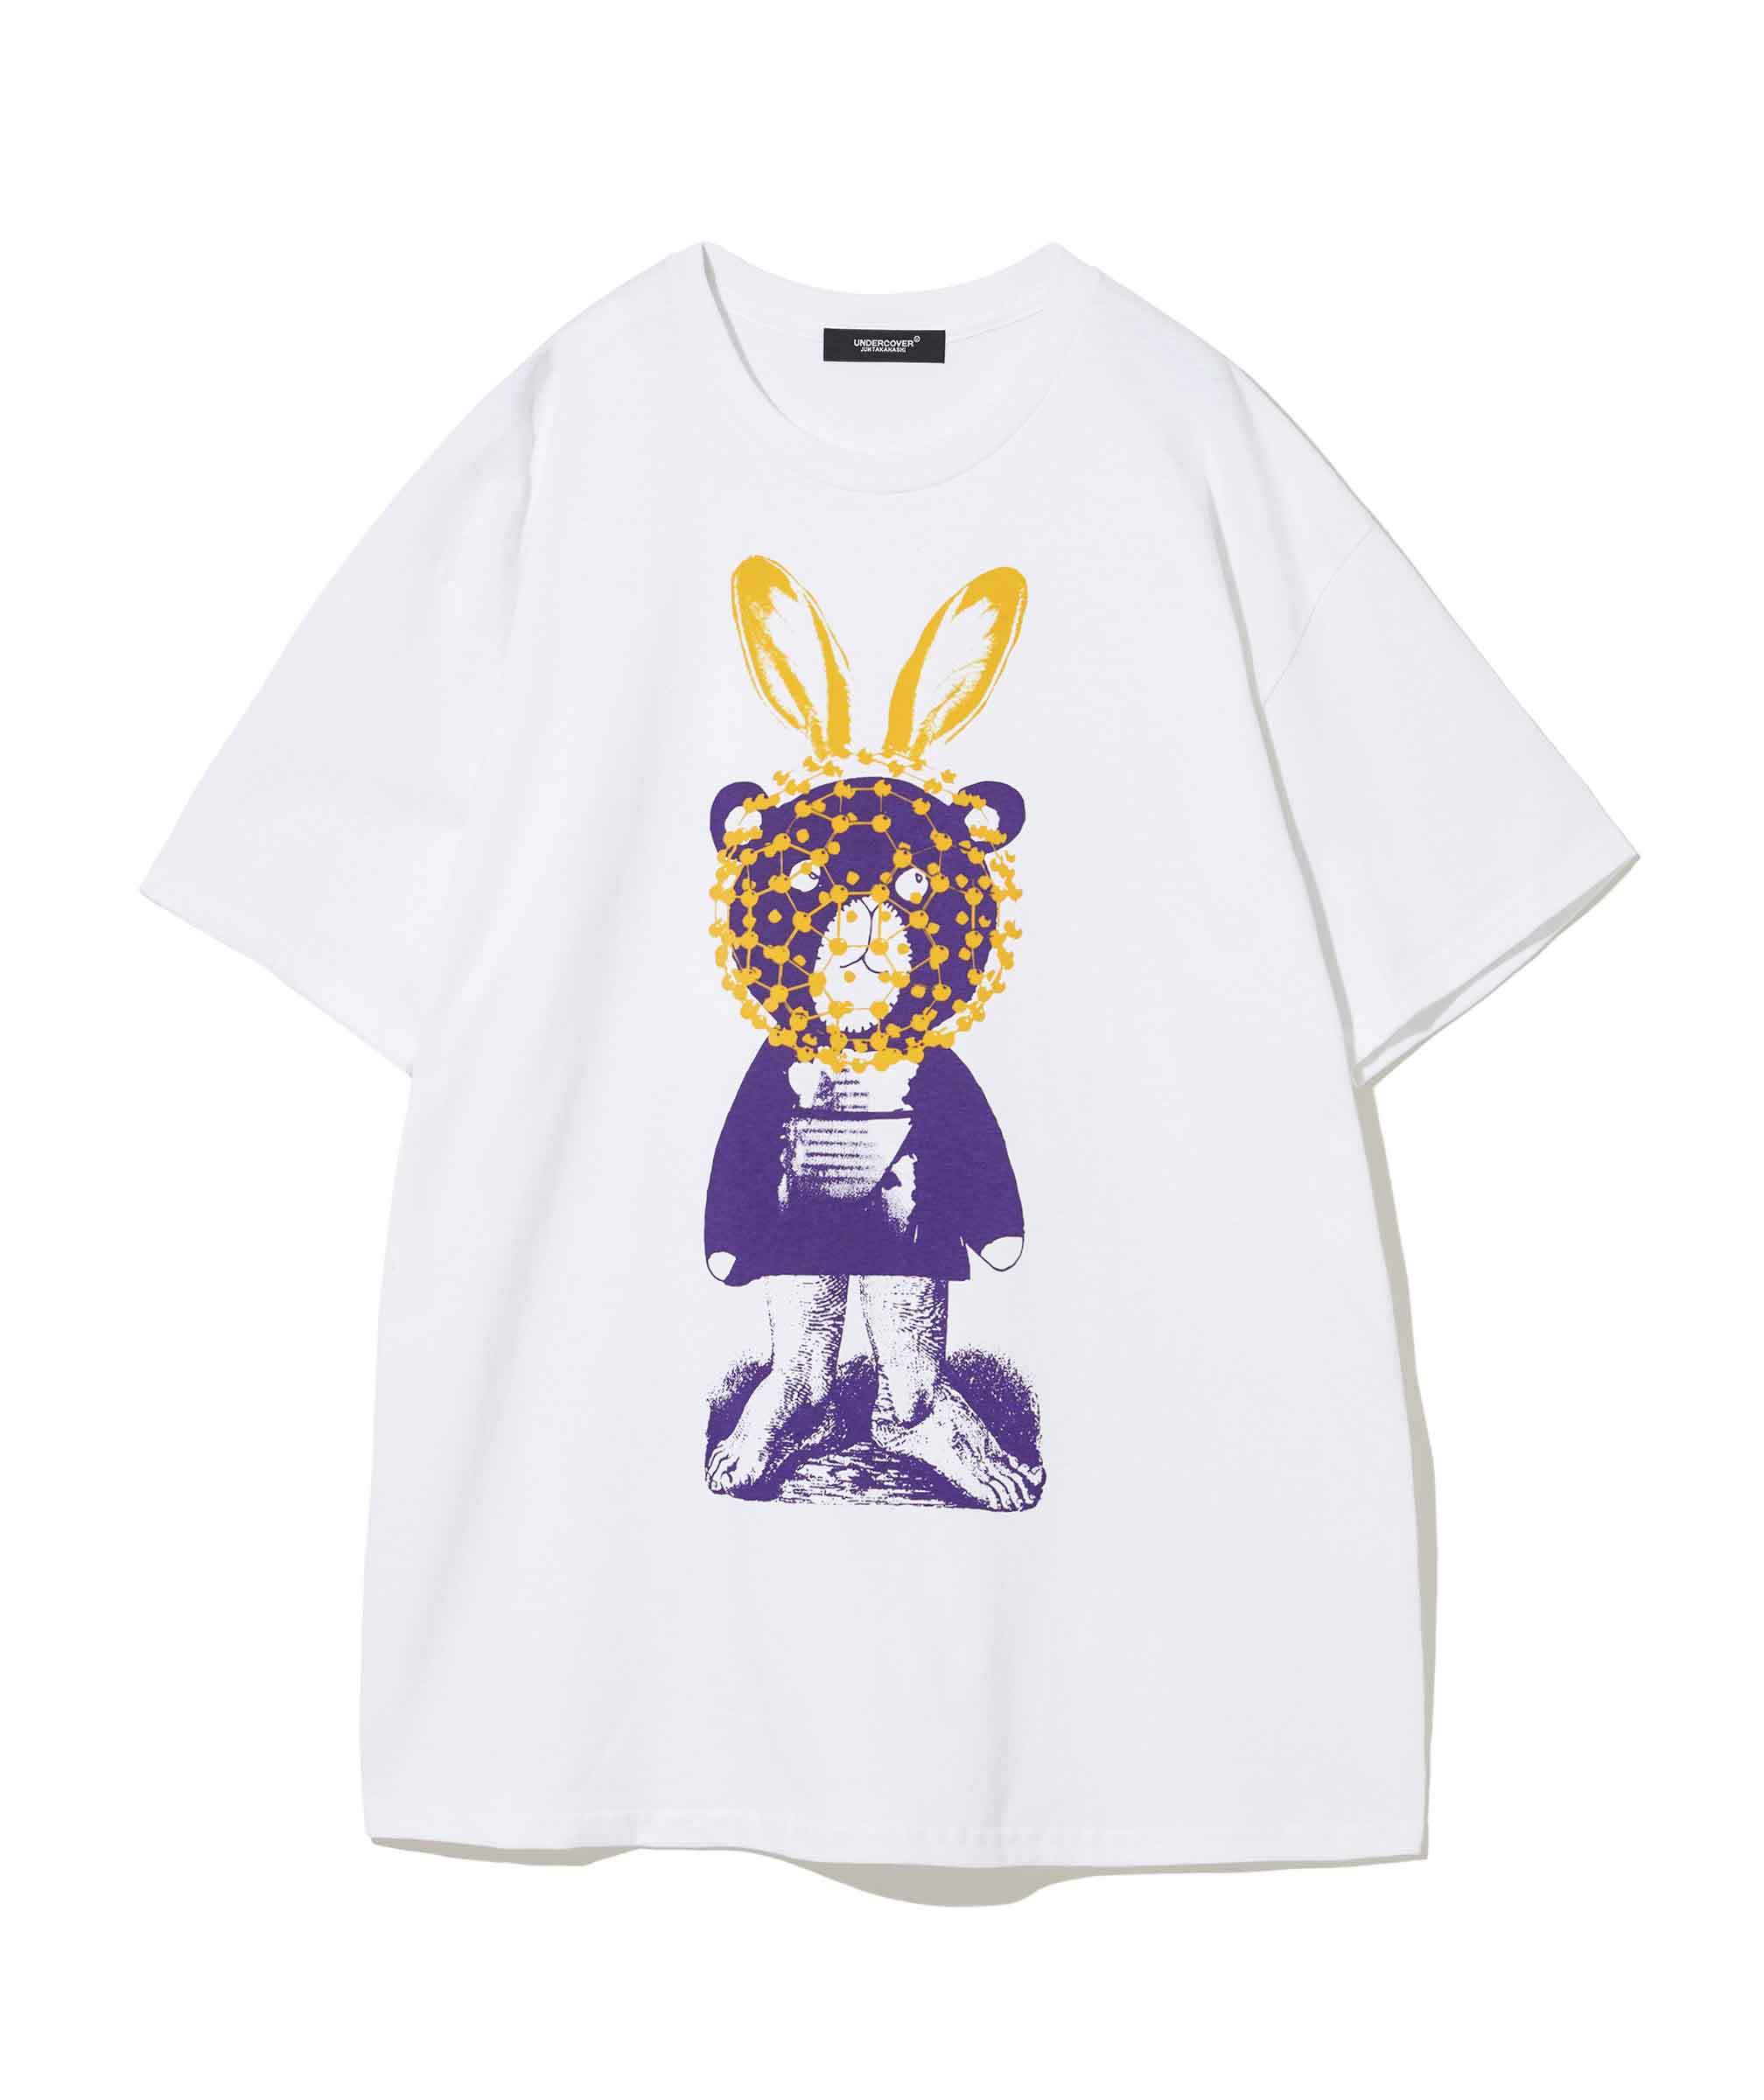 アンダーカバーがアート展「コズミック チルドレン」を伊勢丹新宿店で開催、記念Tシャツ3種類を発売